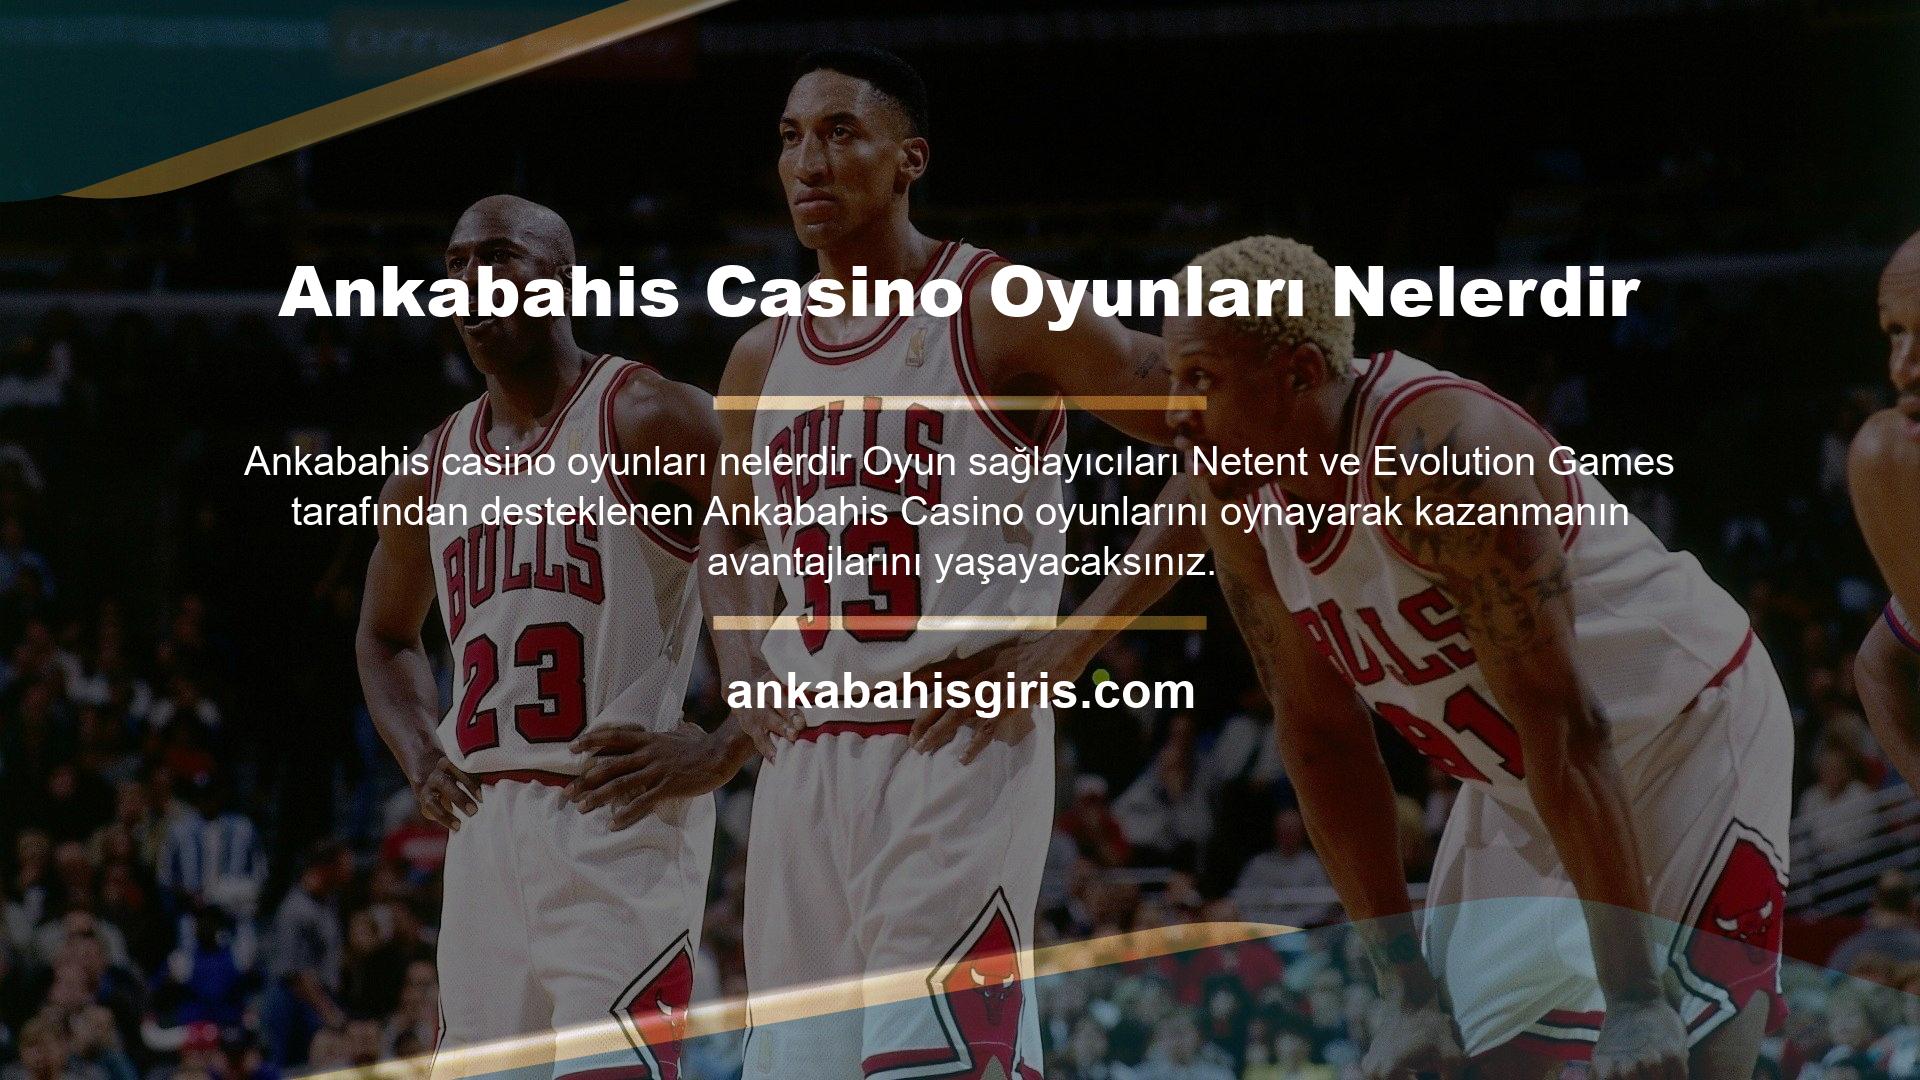 Spor bahisleri gibi kaliteli ve ilgi çekici etkinlikleri yayınlayan site, Türkçe dil desteği ile herkesin kolaylıkla casino oyunları oynayabilmesini sağlamaktadır